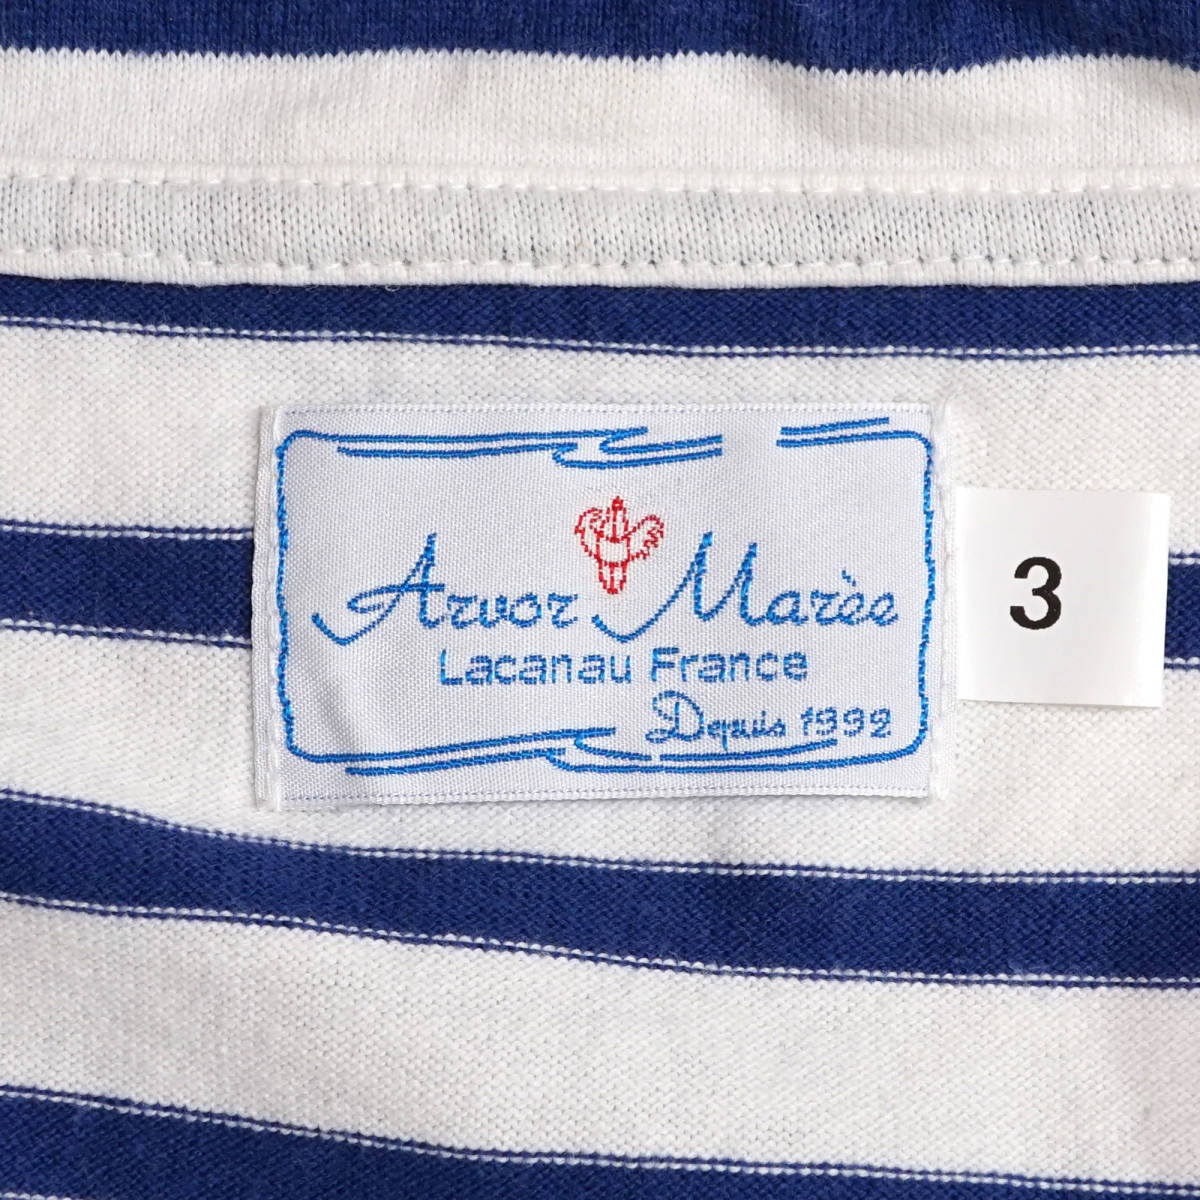 ARVOR MAREEseila- Polo border 3arubo-mare- France sailor Sailor Polo Border White Blue